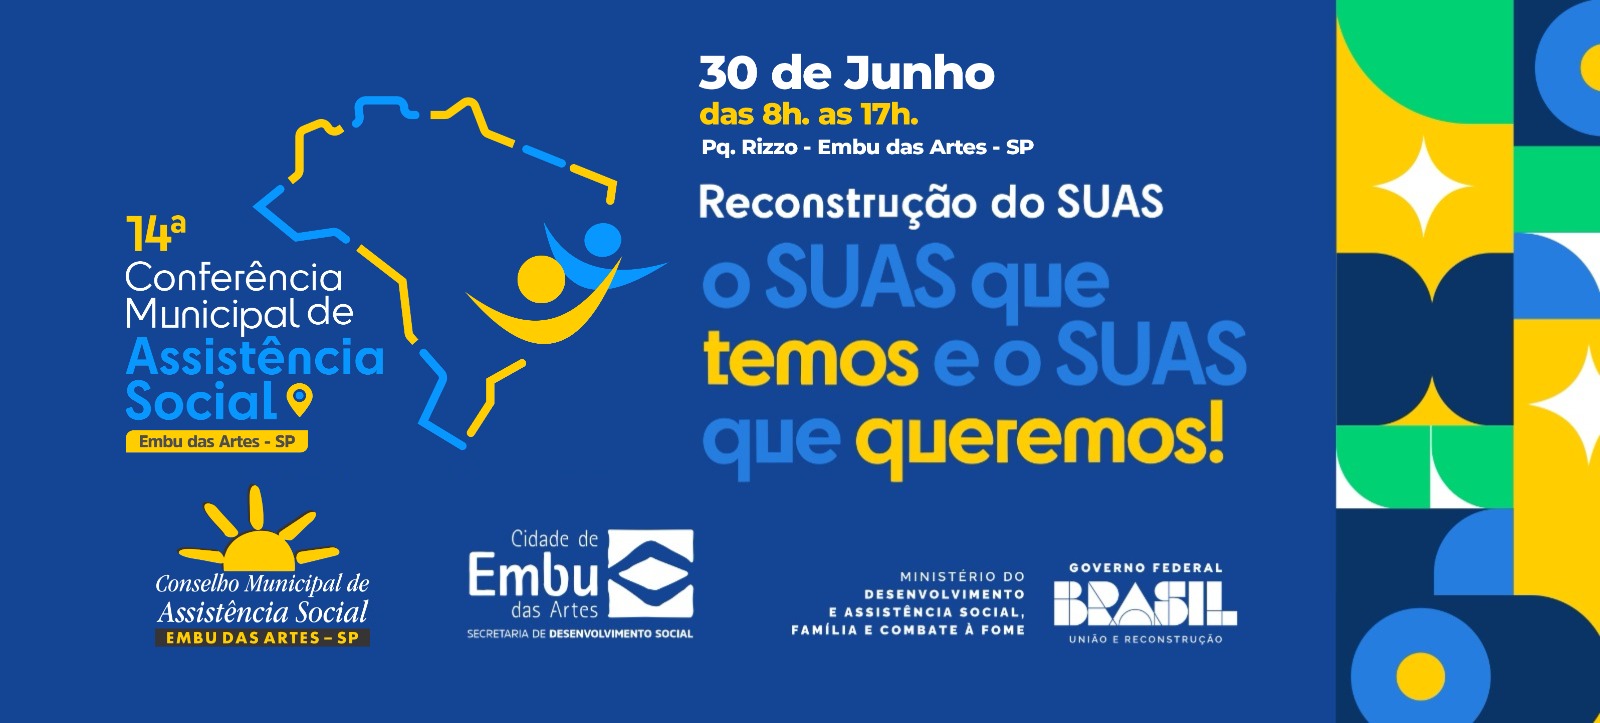 Conferência Municipal de Assistência Social de Embu das Artes será realizada dia 30 de junho